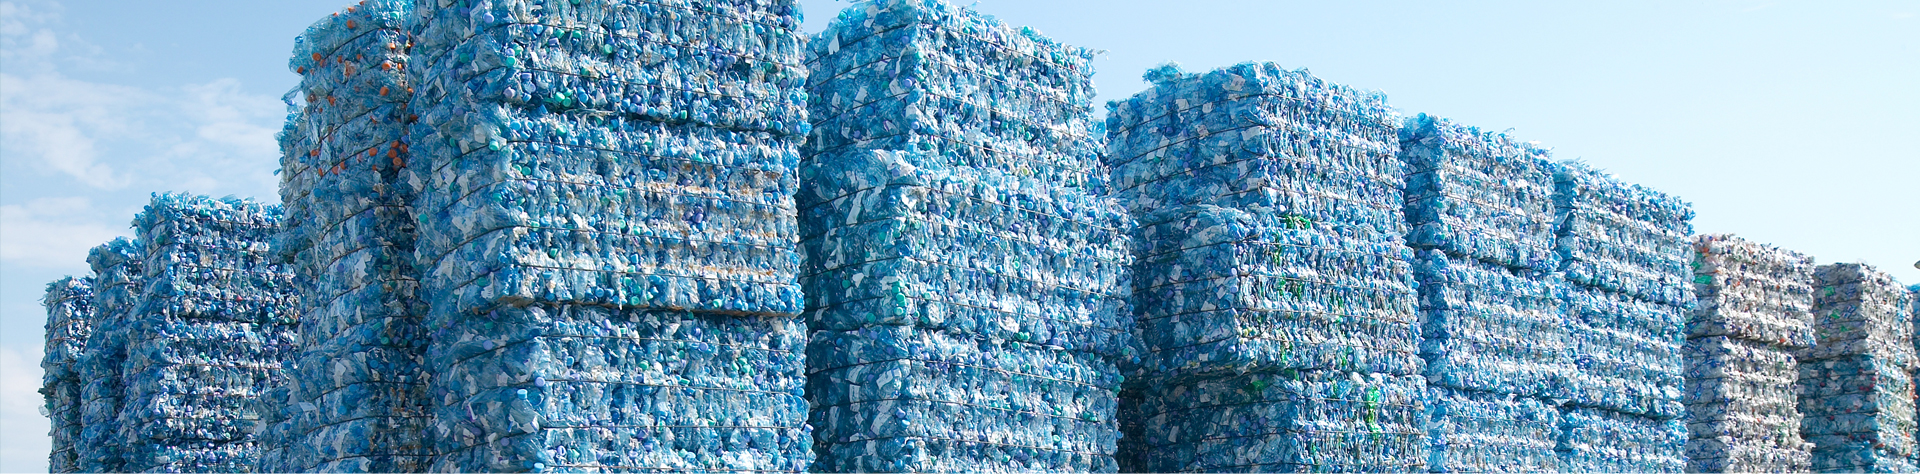 Recyklace plastů moderními technologiemi šetrnými k životnímu prostředí i vašemu zdraví.